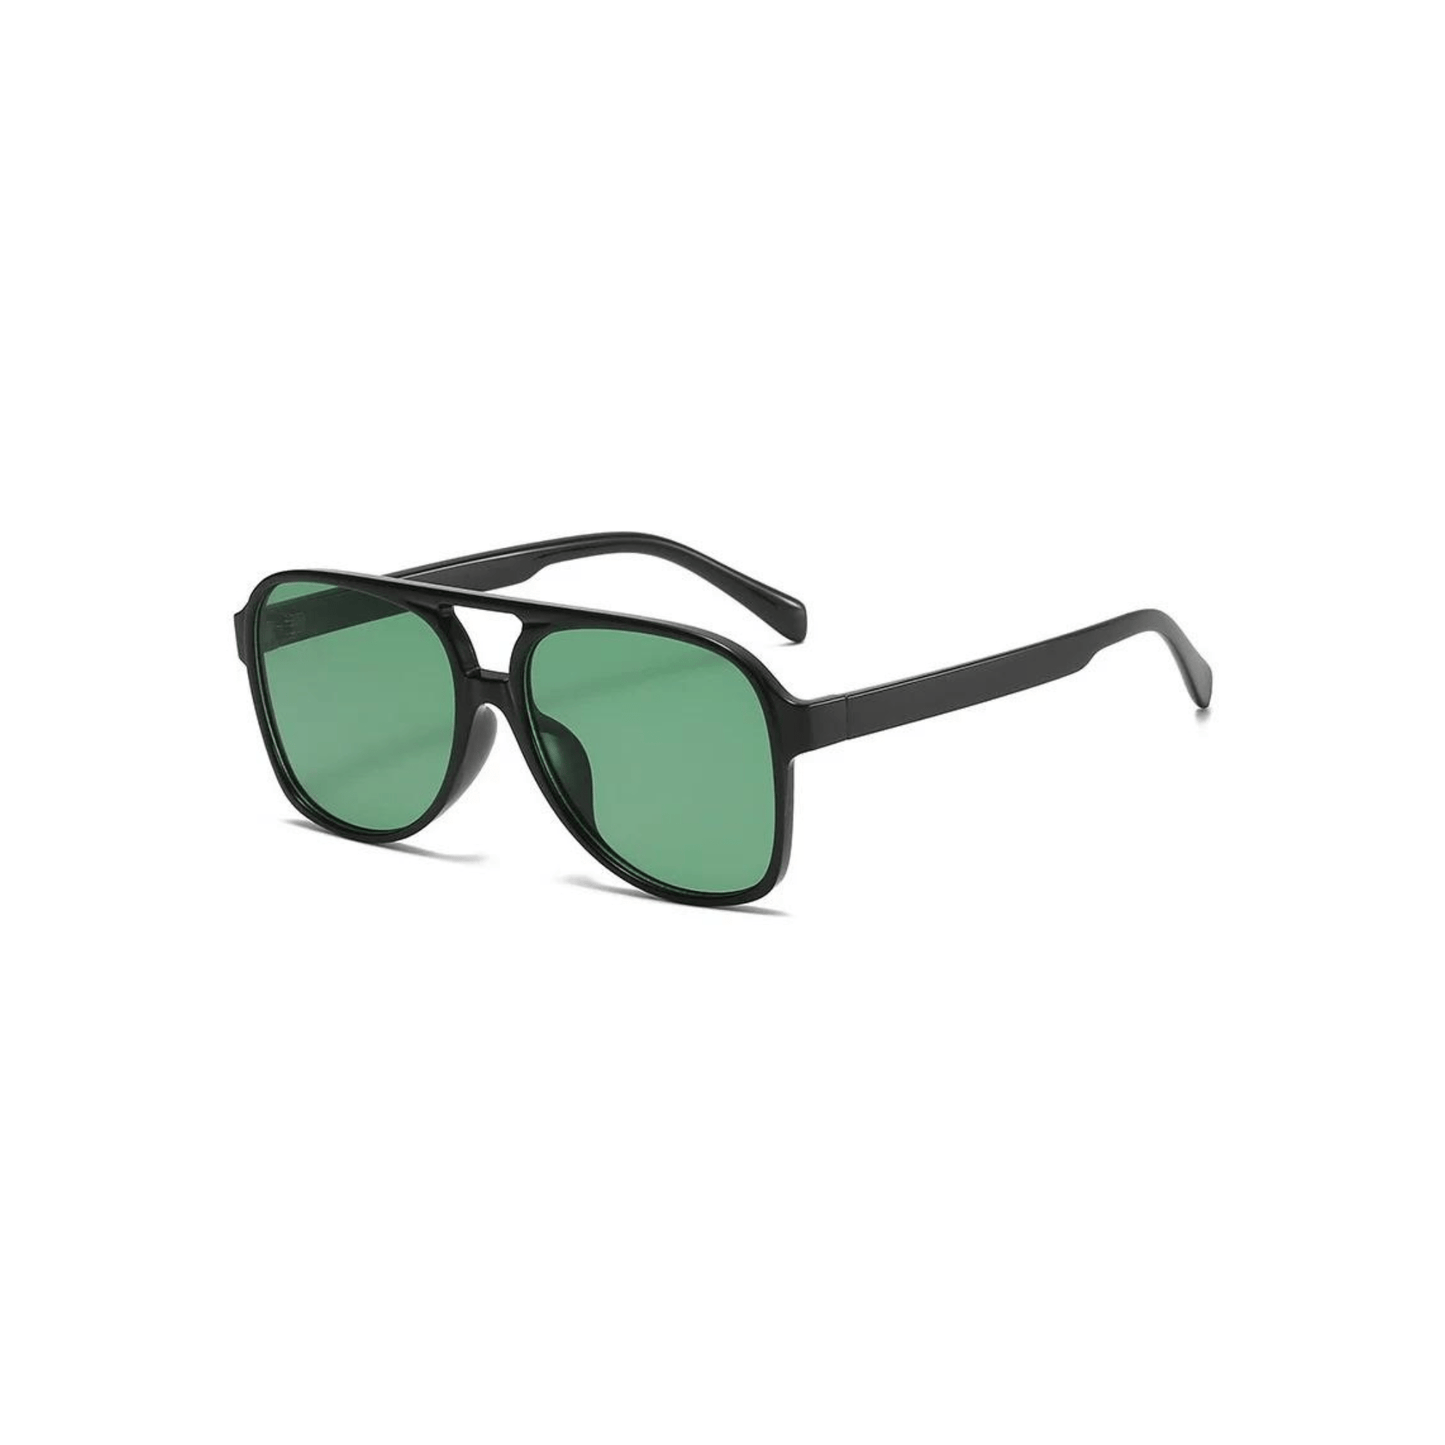 aviator sunglasses green lens black frame desert festival outfit